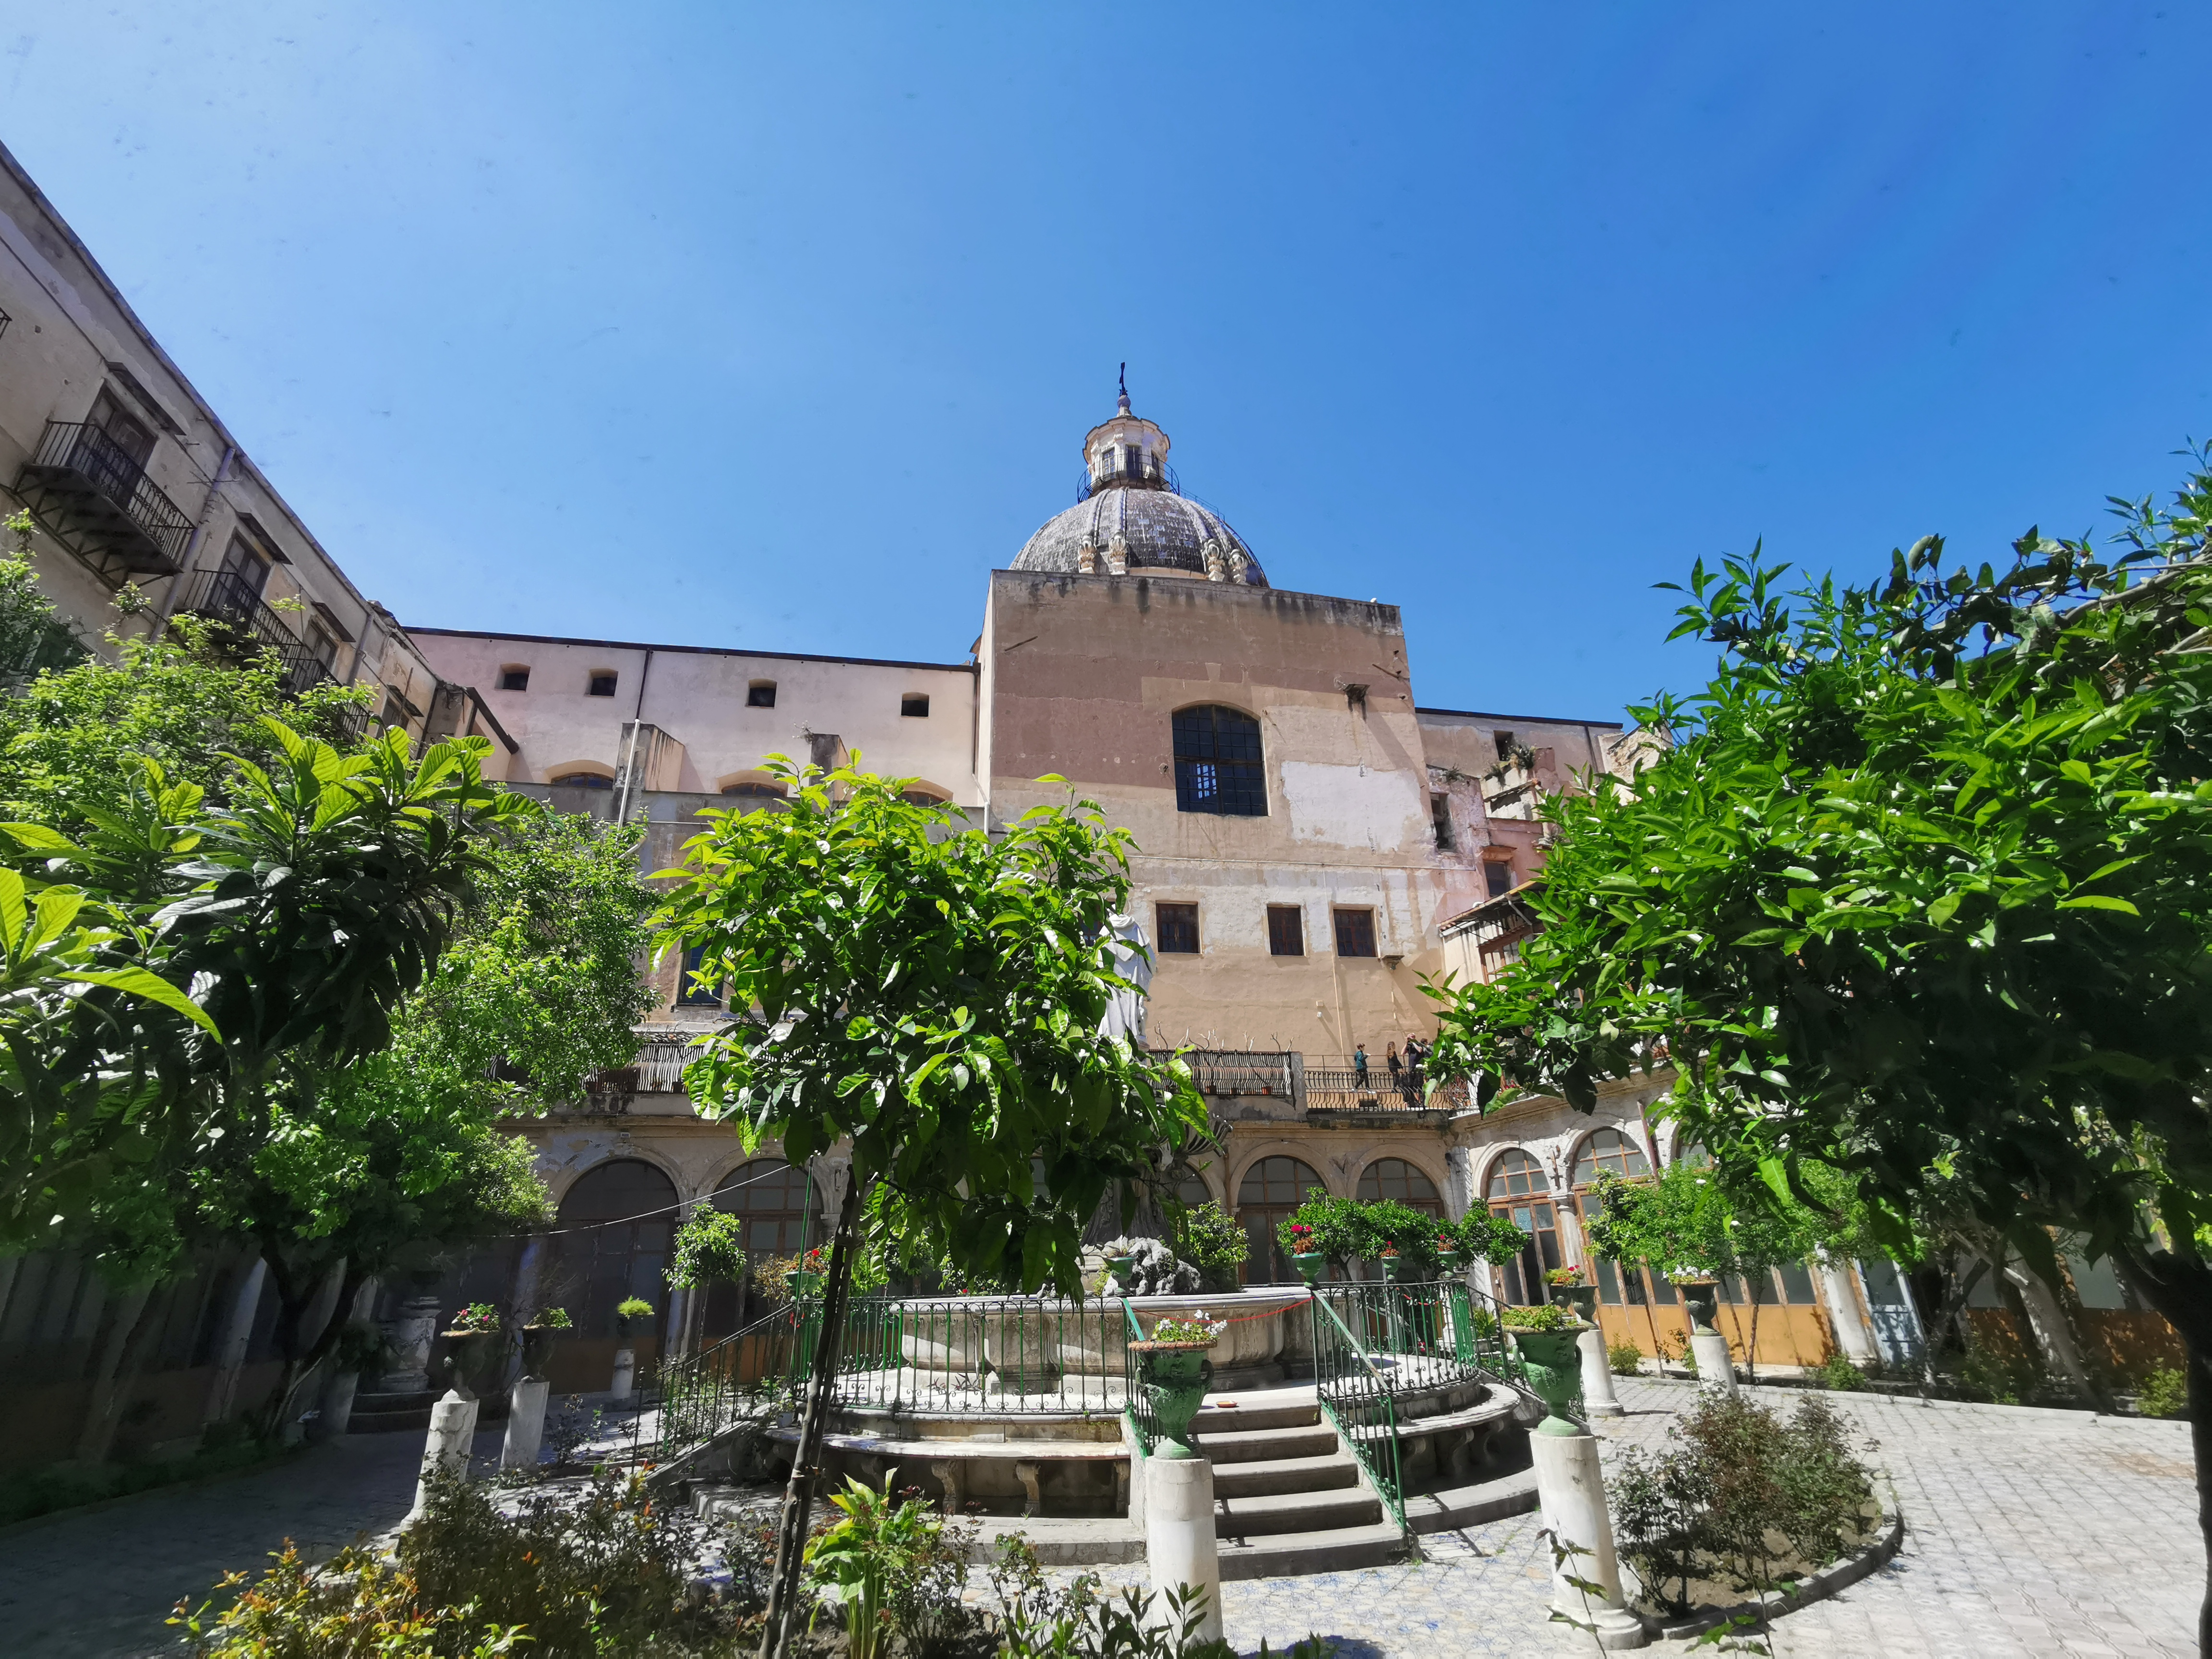 Santa Caterina d'Alessandria - claustro con la cúpula de la iglesia